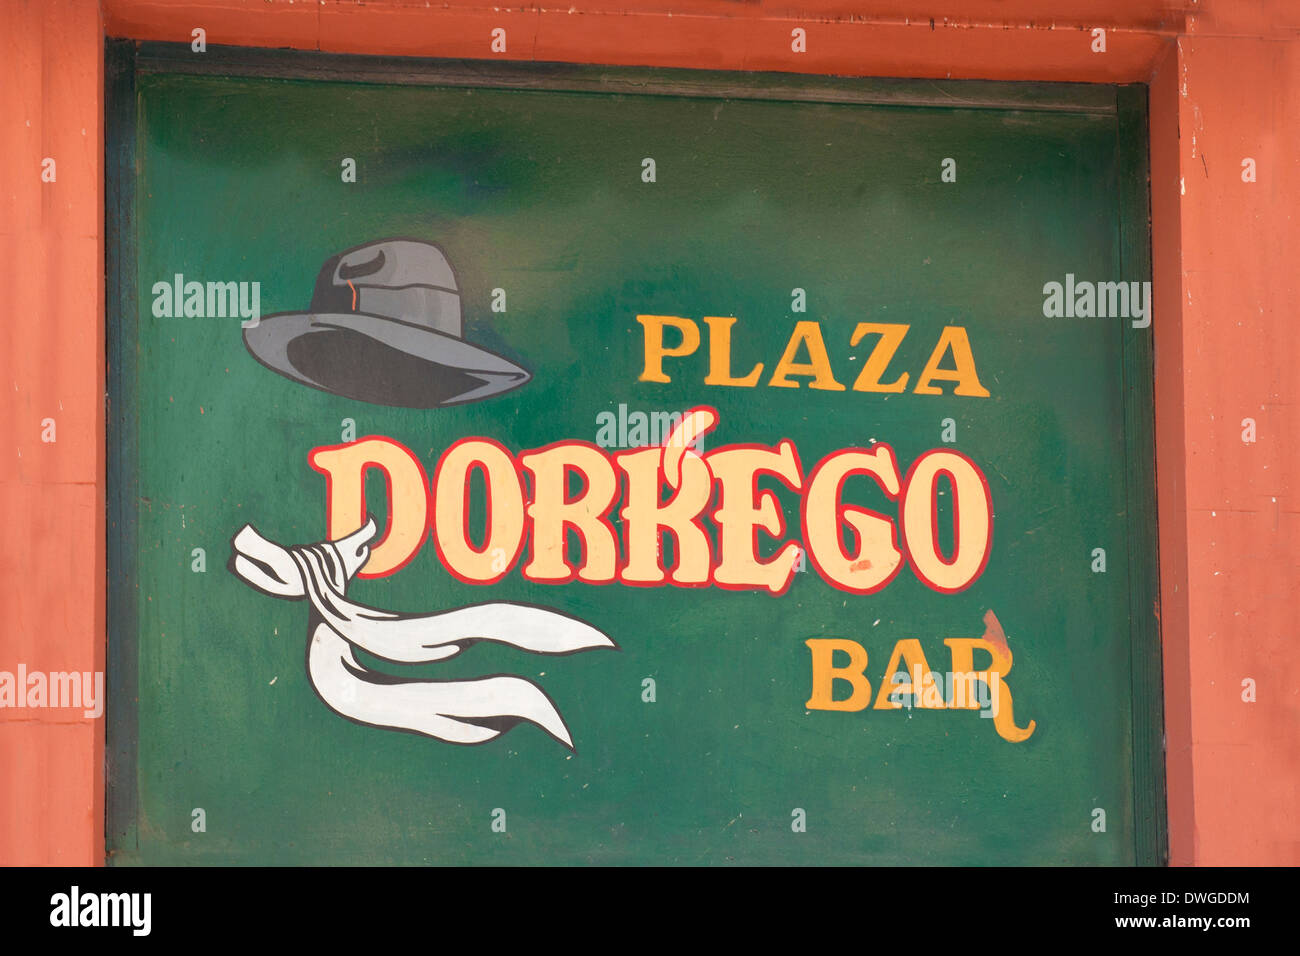 Plaza Dorrego bar, Buenos Aires Stock Photo